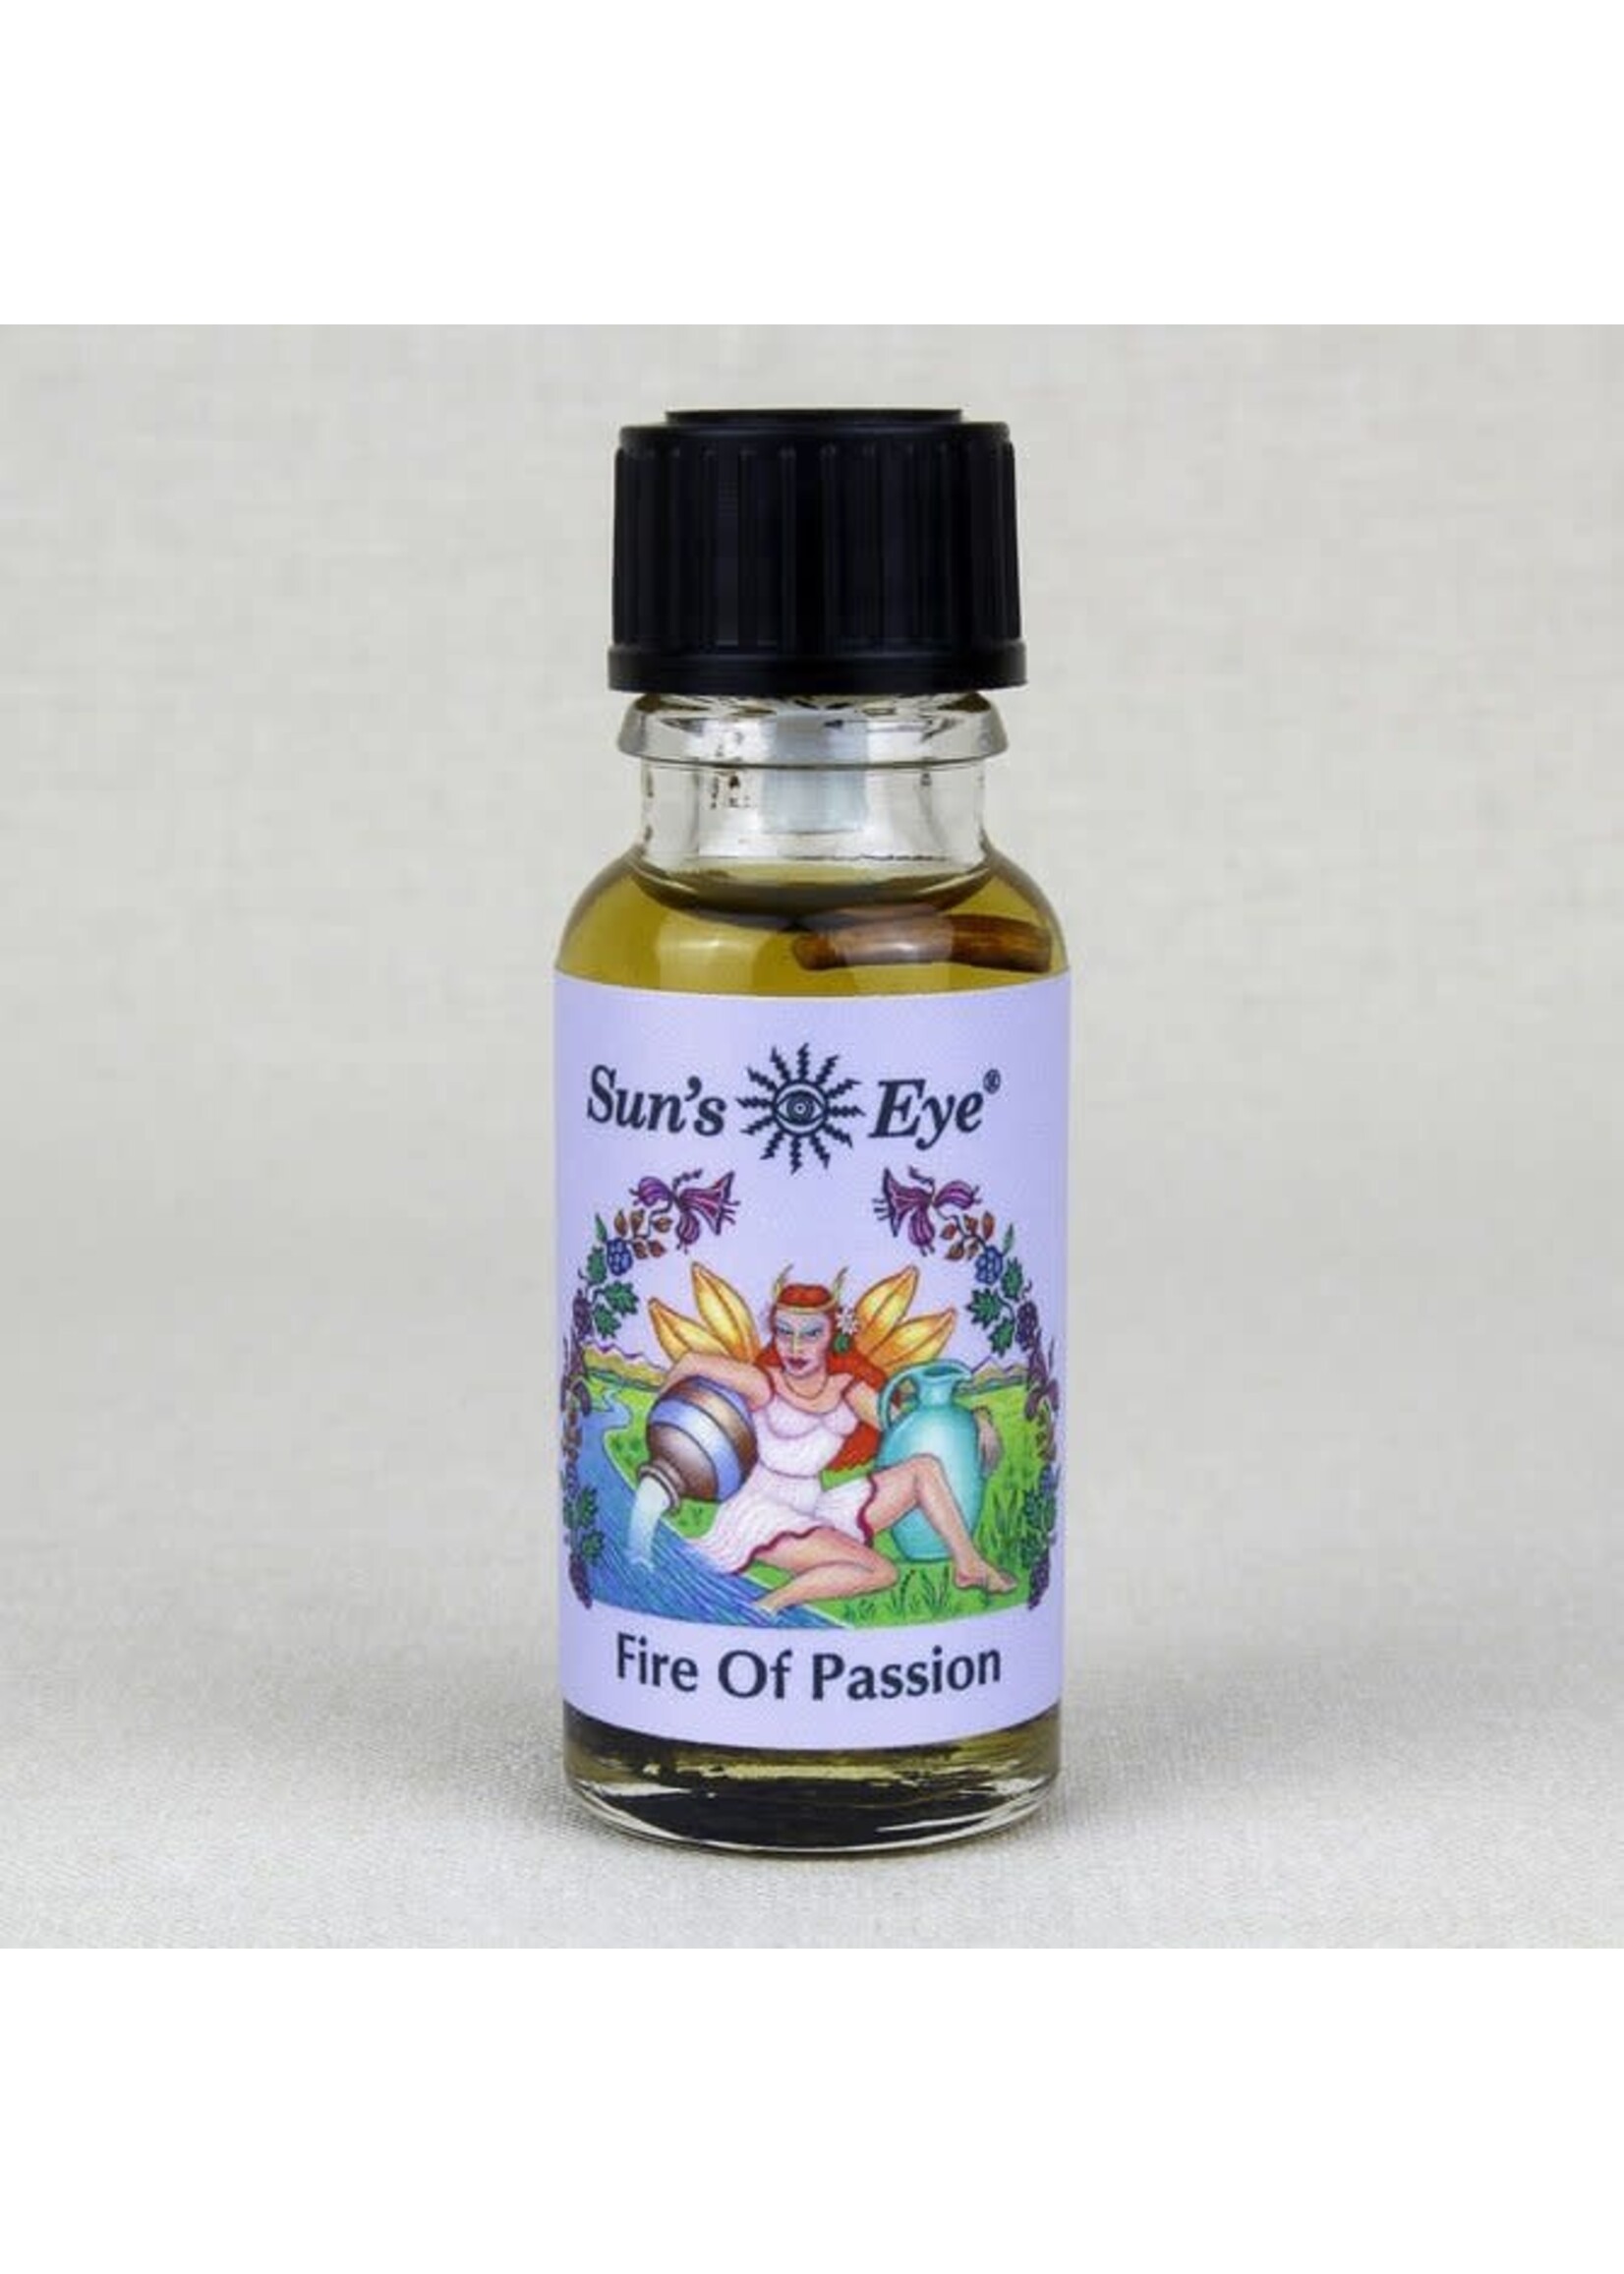 Sun's Eye Mystic Series Oil Blends - .5oz Bottle